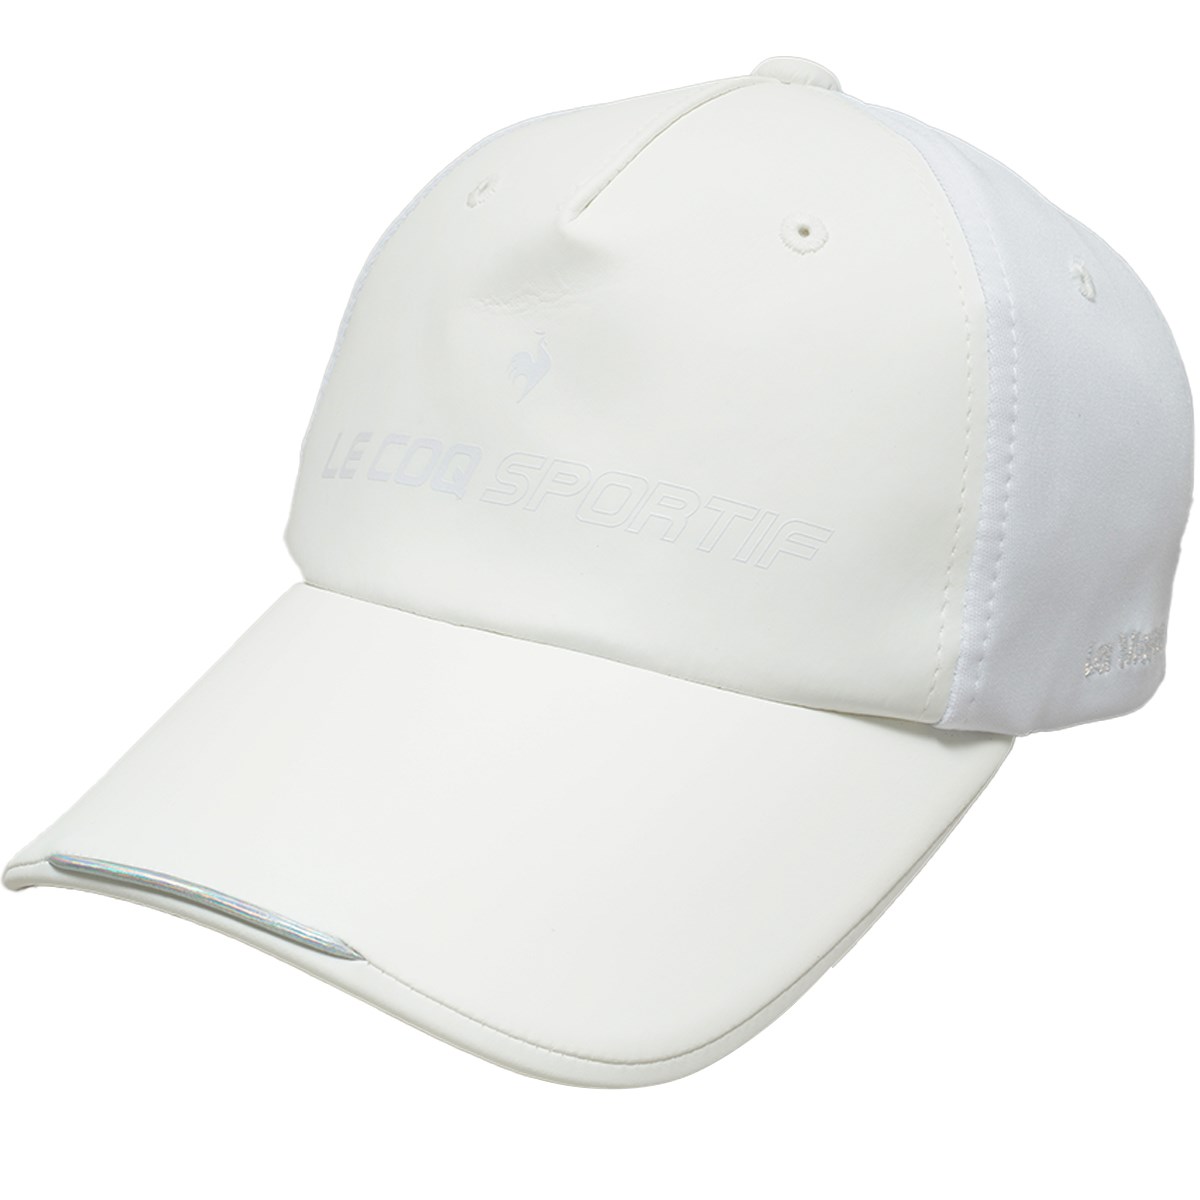 [2022年モデル] ルコックゴルフ Le coq sportif GOLF RIJOUME フェイクレザーキャップ ホワイト 00 レディース ゴルフウェア 帽子